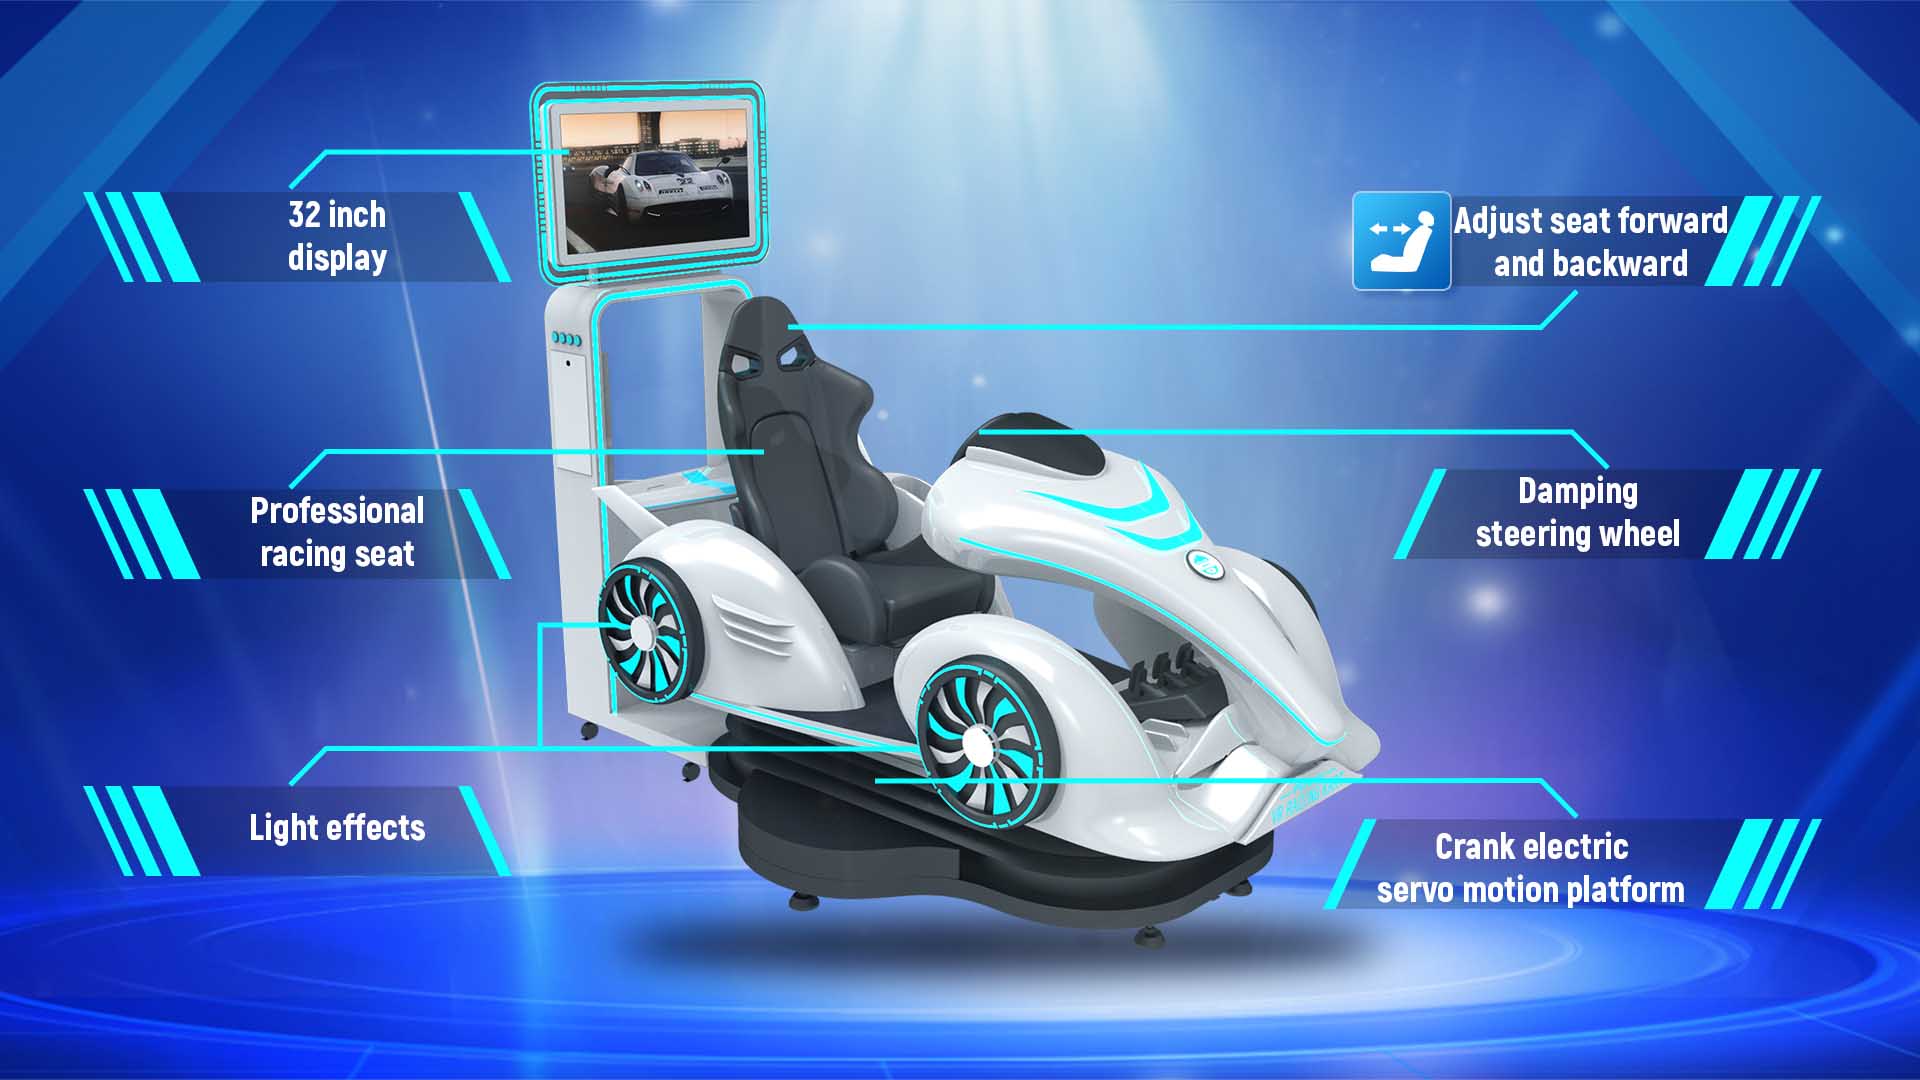 Racing Kart VR Theme Park Machine 9D Virtual Go-Kart Simulator - Dynamic Theme - 2